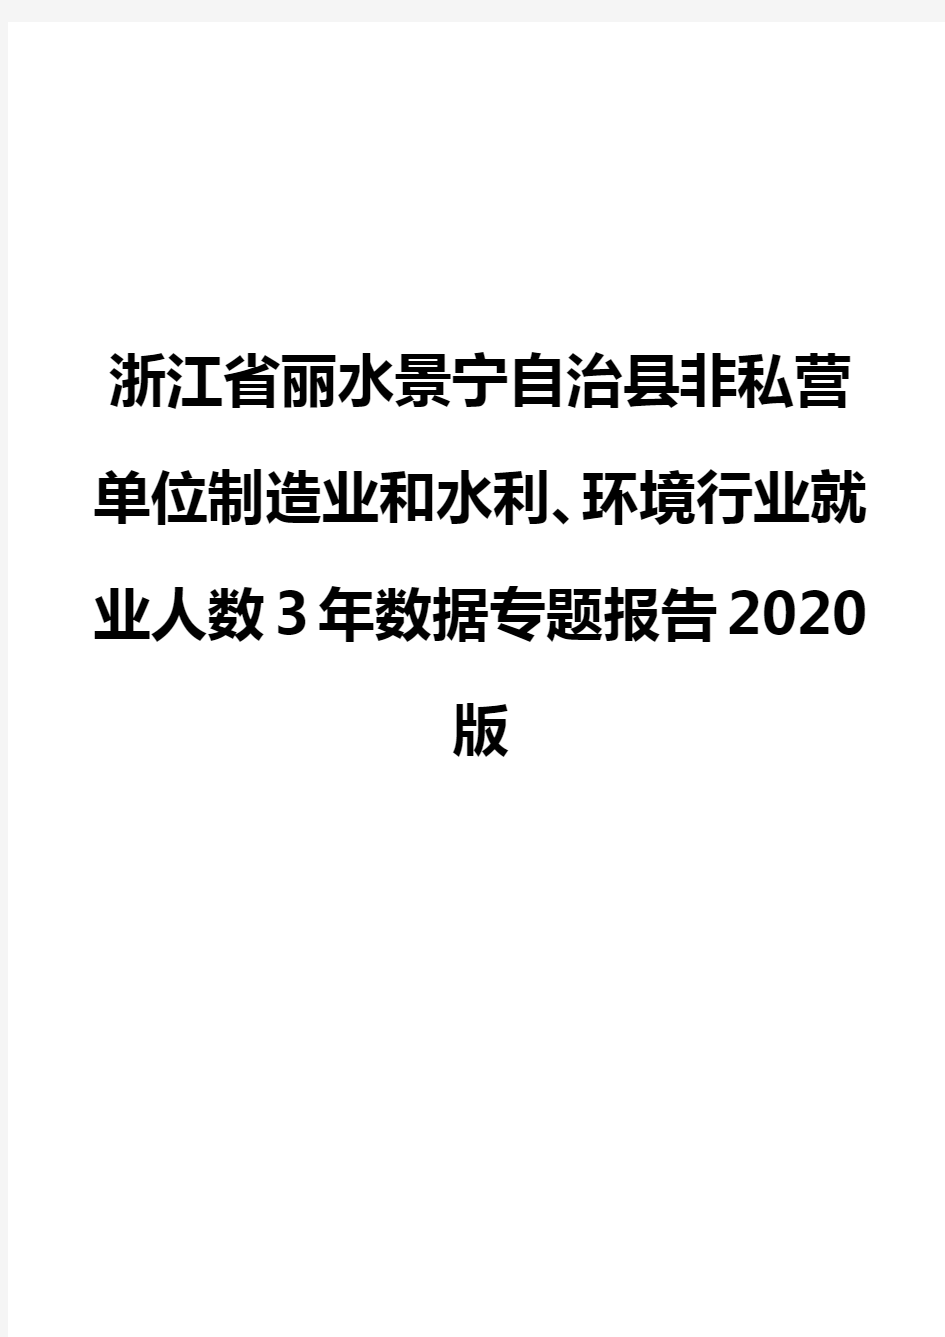 浙江省丽水景宁自治县非私营单位制造业和水利、环境行业就业人数3年数据专题报告2020版